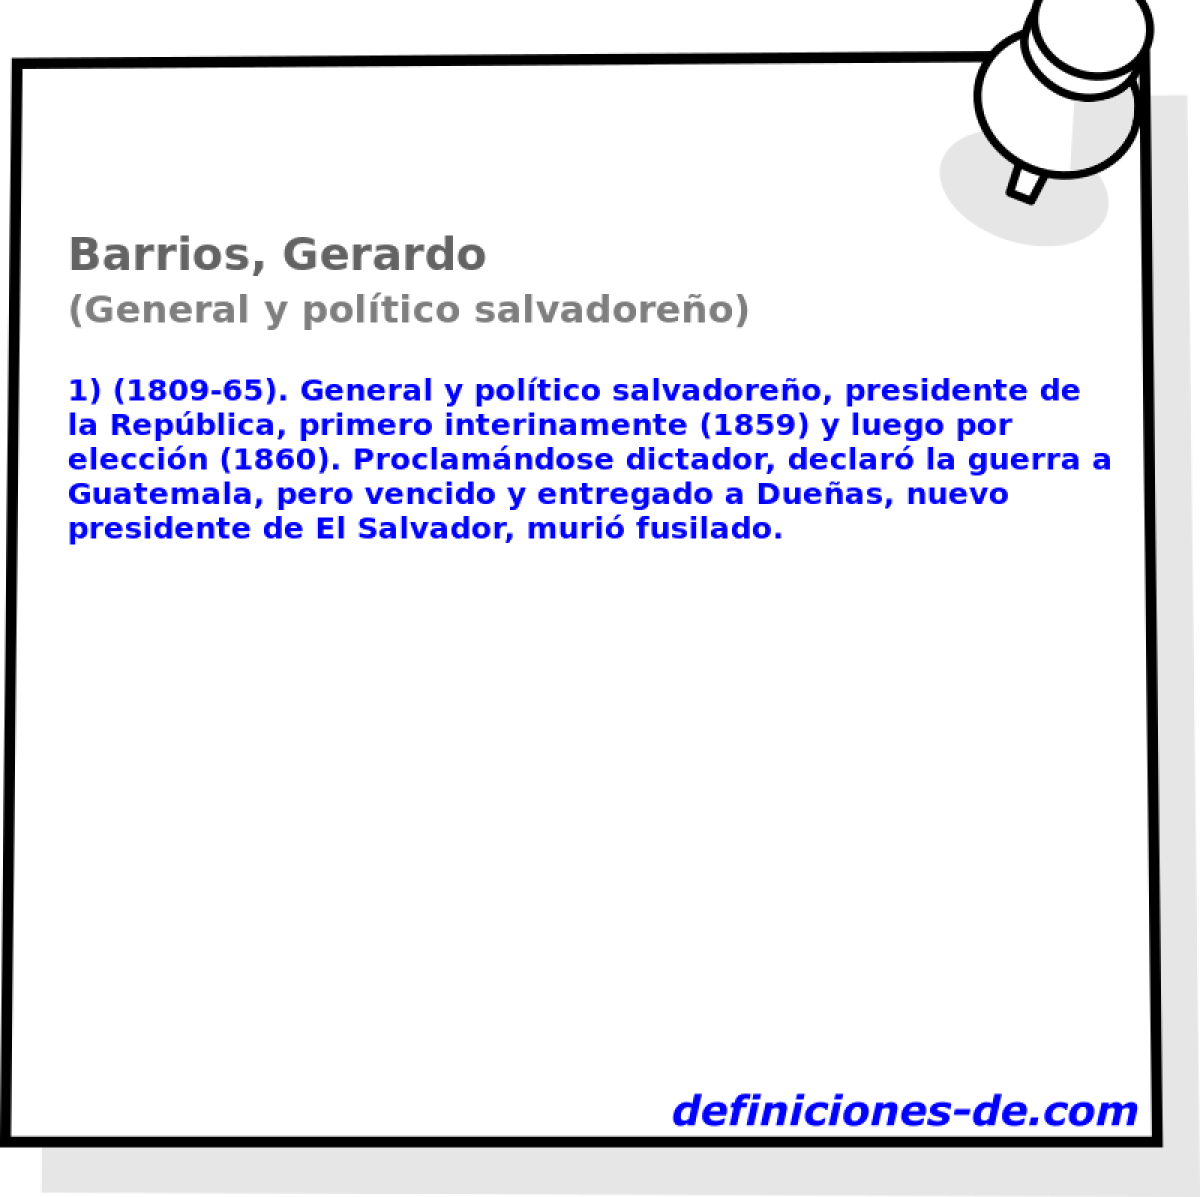 Barrios, Gerardo (General y poltico salvadoreo)